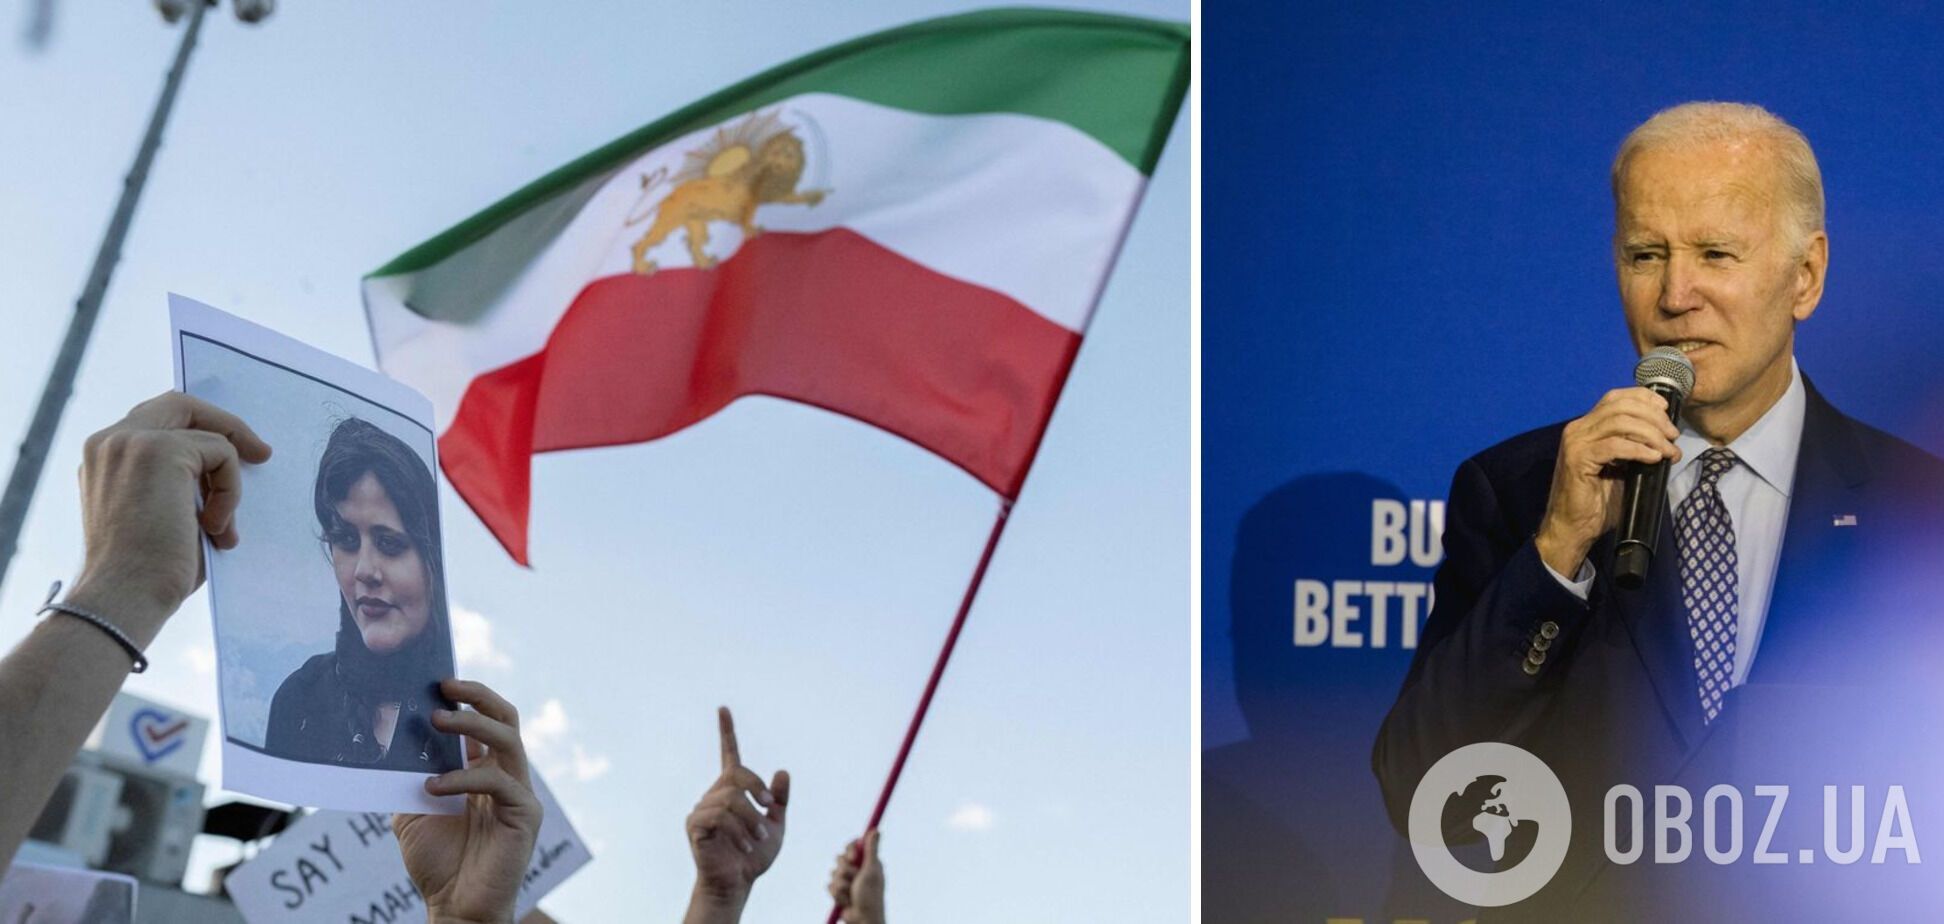 Байден отреагировал на протесты в Тегеране: мы освободим Иран, они сами себя освободят очень скоро